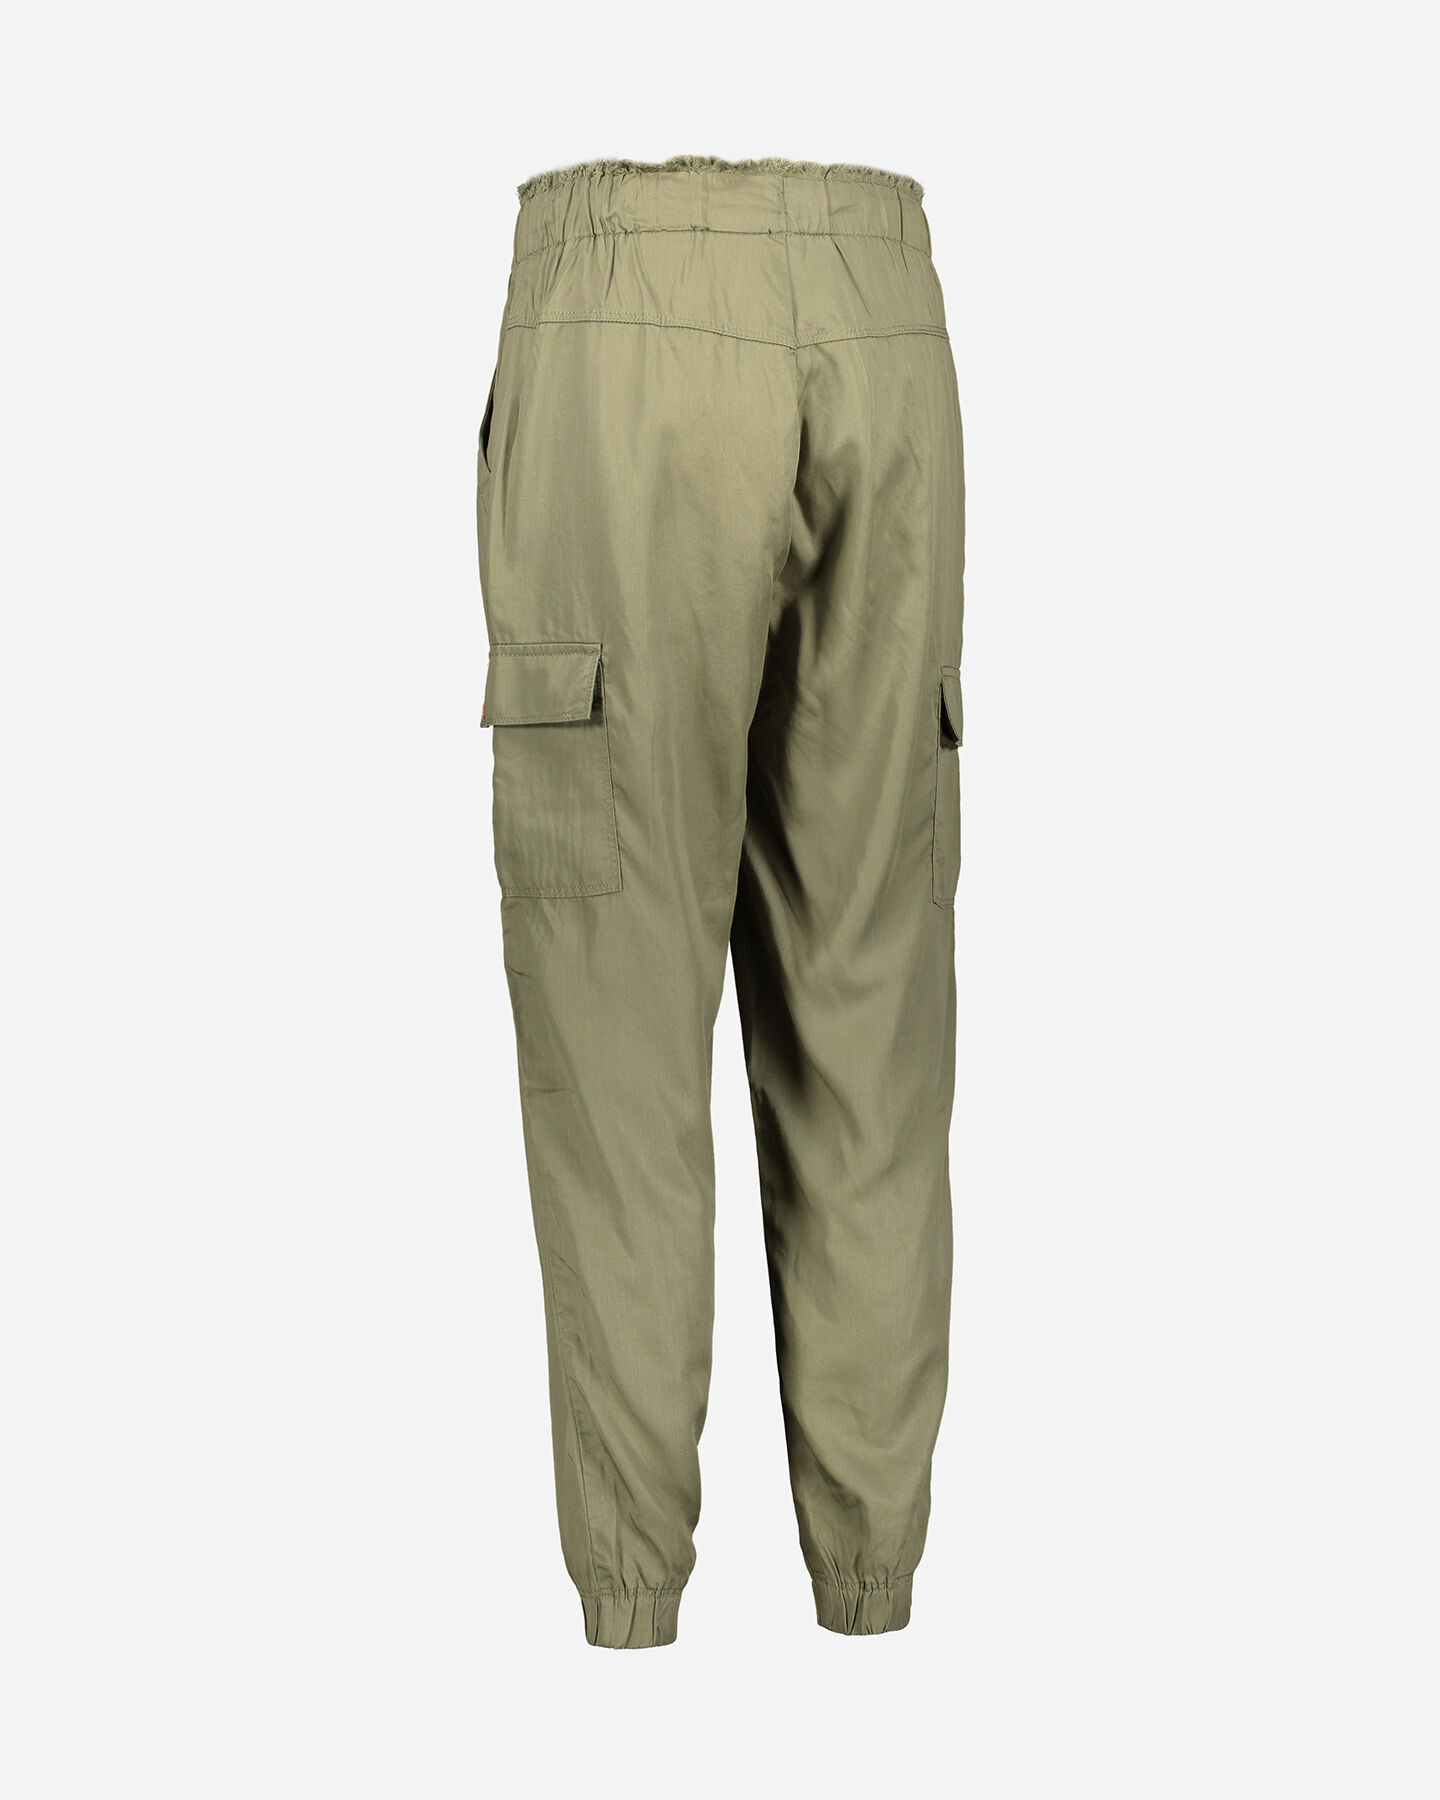  Pantalone MISTRAL TENCEL W S4087908|842|S scatto 5